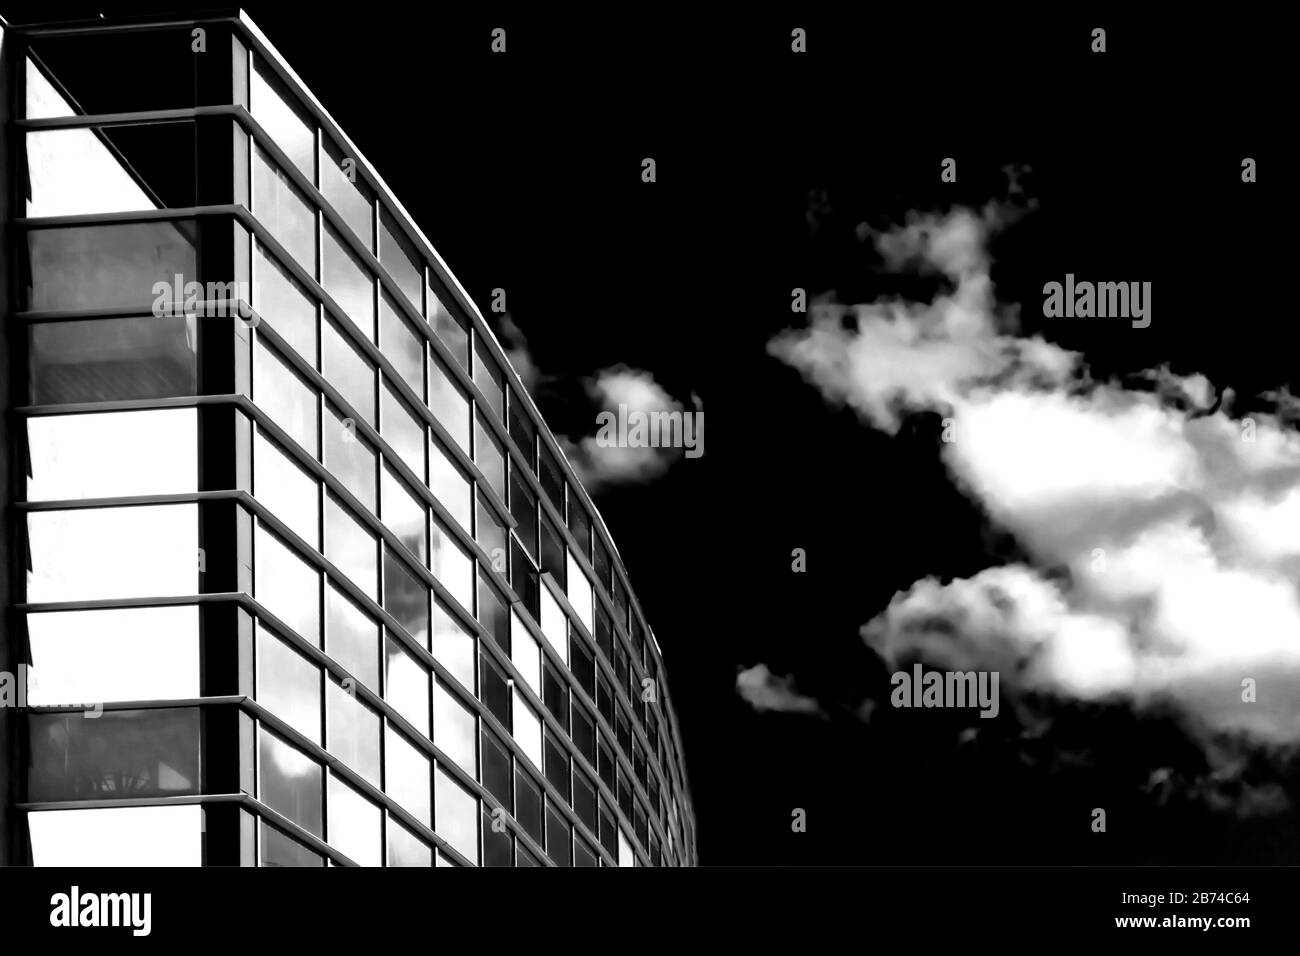 Himmel und Wolken reflektieren in Wolkenkratzeln. Gebäude von unten. Blsck und weißes Konzept Stockfoto